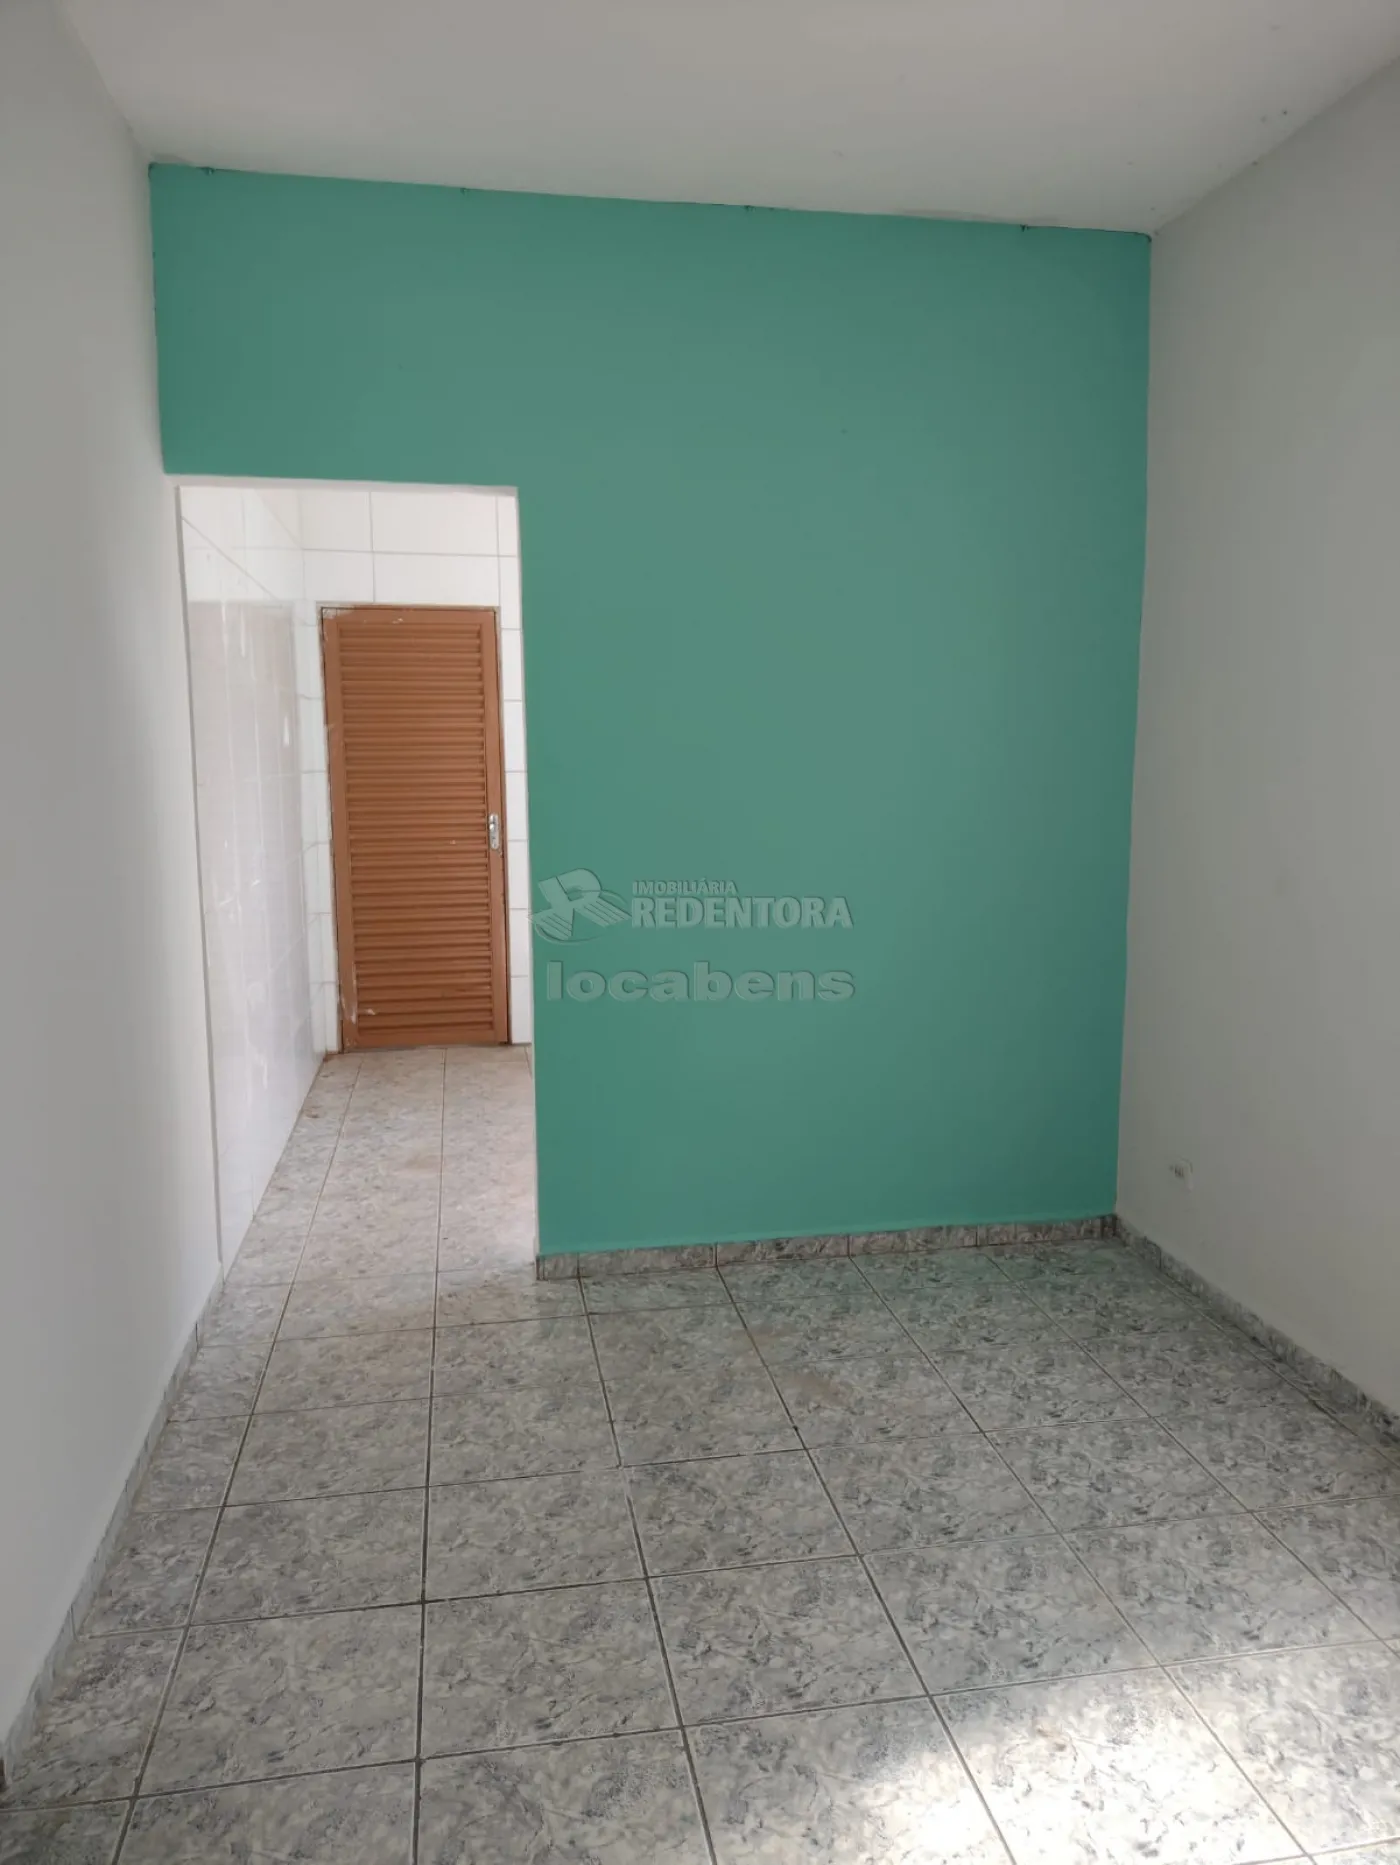 Comprar Casa / Padrão em São José do Rio Preto R$ 260.000,00 - Foto 3